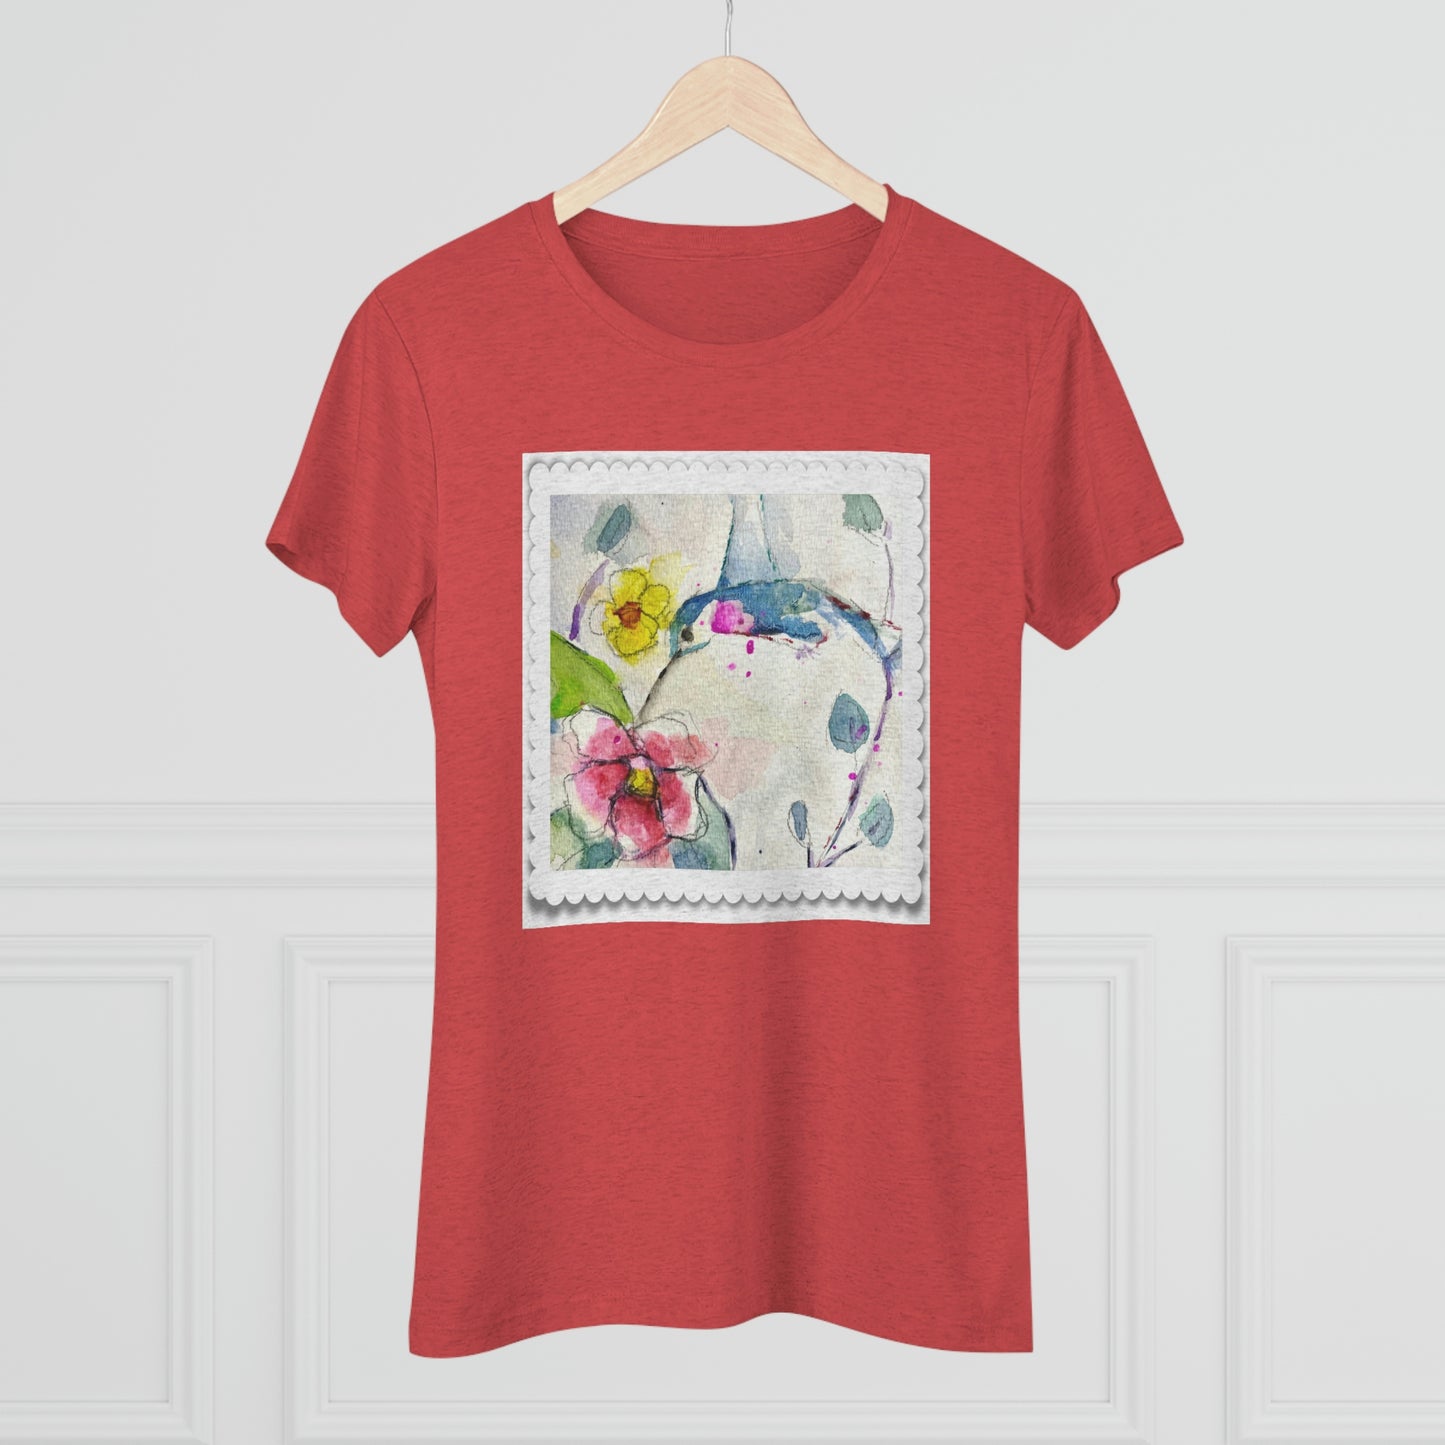 Hummingbird Women's fitted Triblend Tee  tee shirt